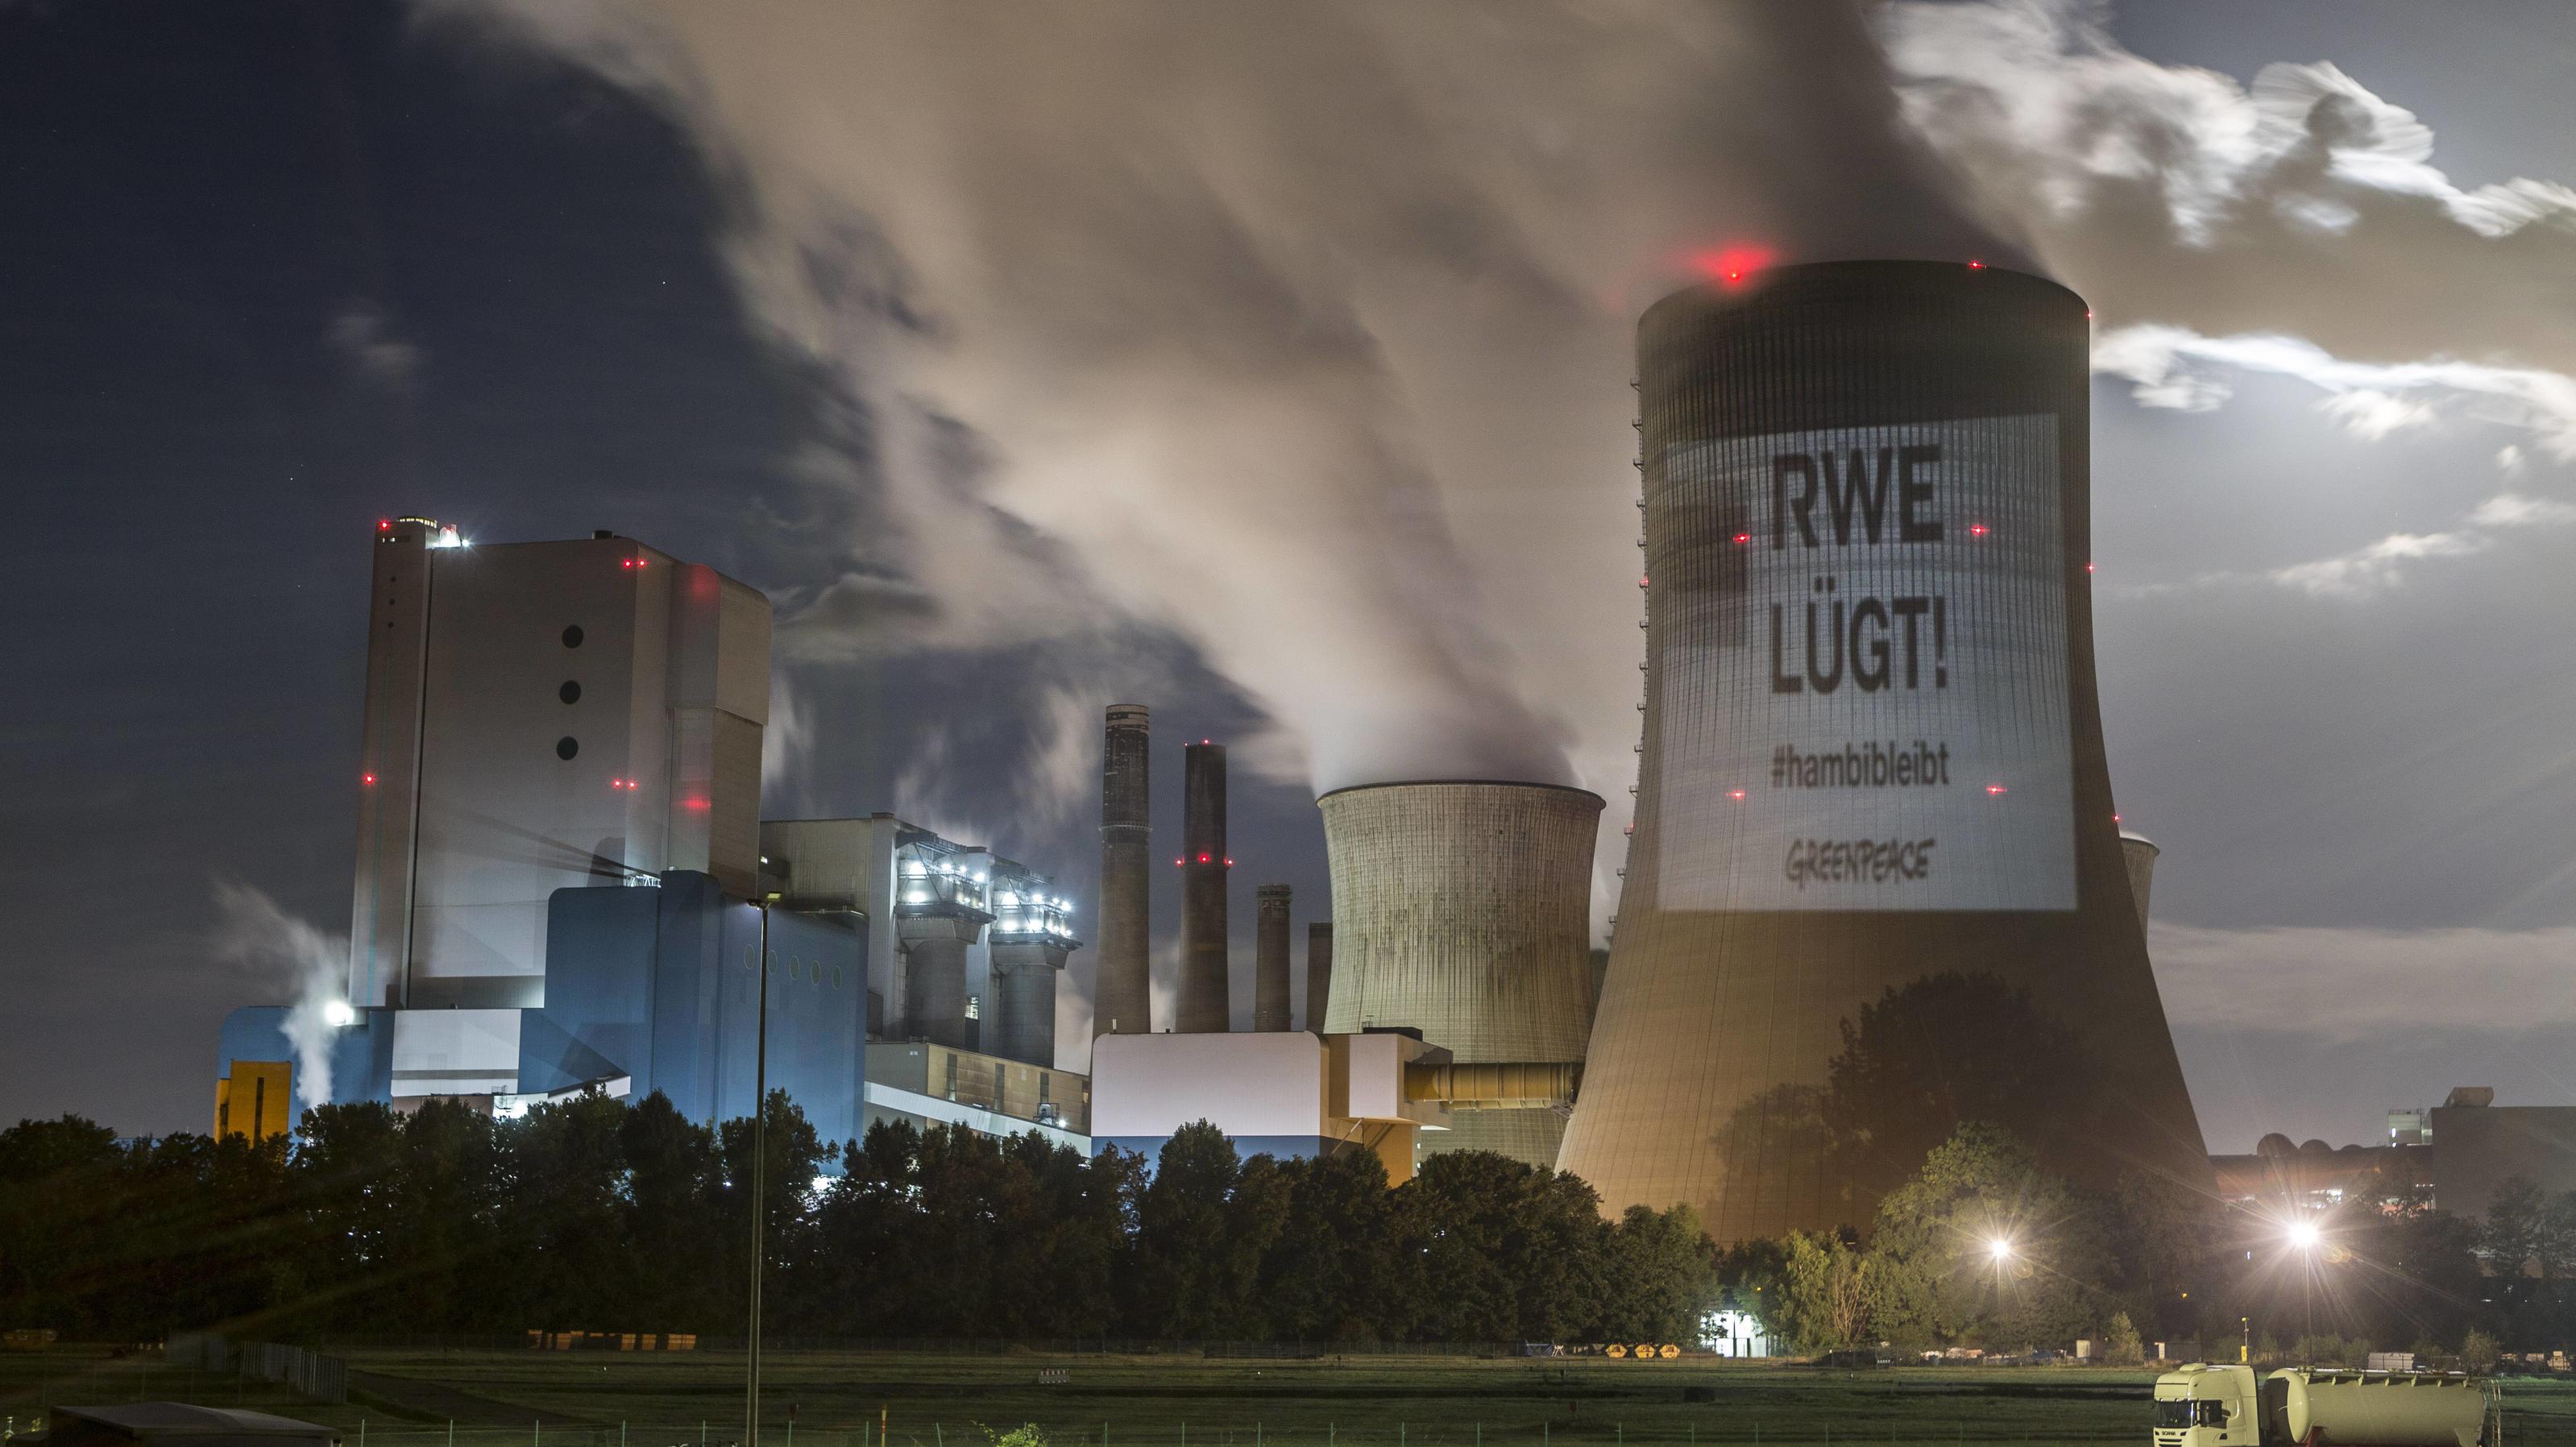 Bergheim, DEU, 25.09.2018 Greenpeace - Projektion RWE luegt auf einen Kuehlturm des Kraftwerks Niederaussem. Das Braunkohlekraftwerk Niederaussem, ein von der RWE Power AG mit Braunkohle betriebenes Grundlastkraftwerk in Bergheim-Niederaußem (Rhein-E